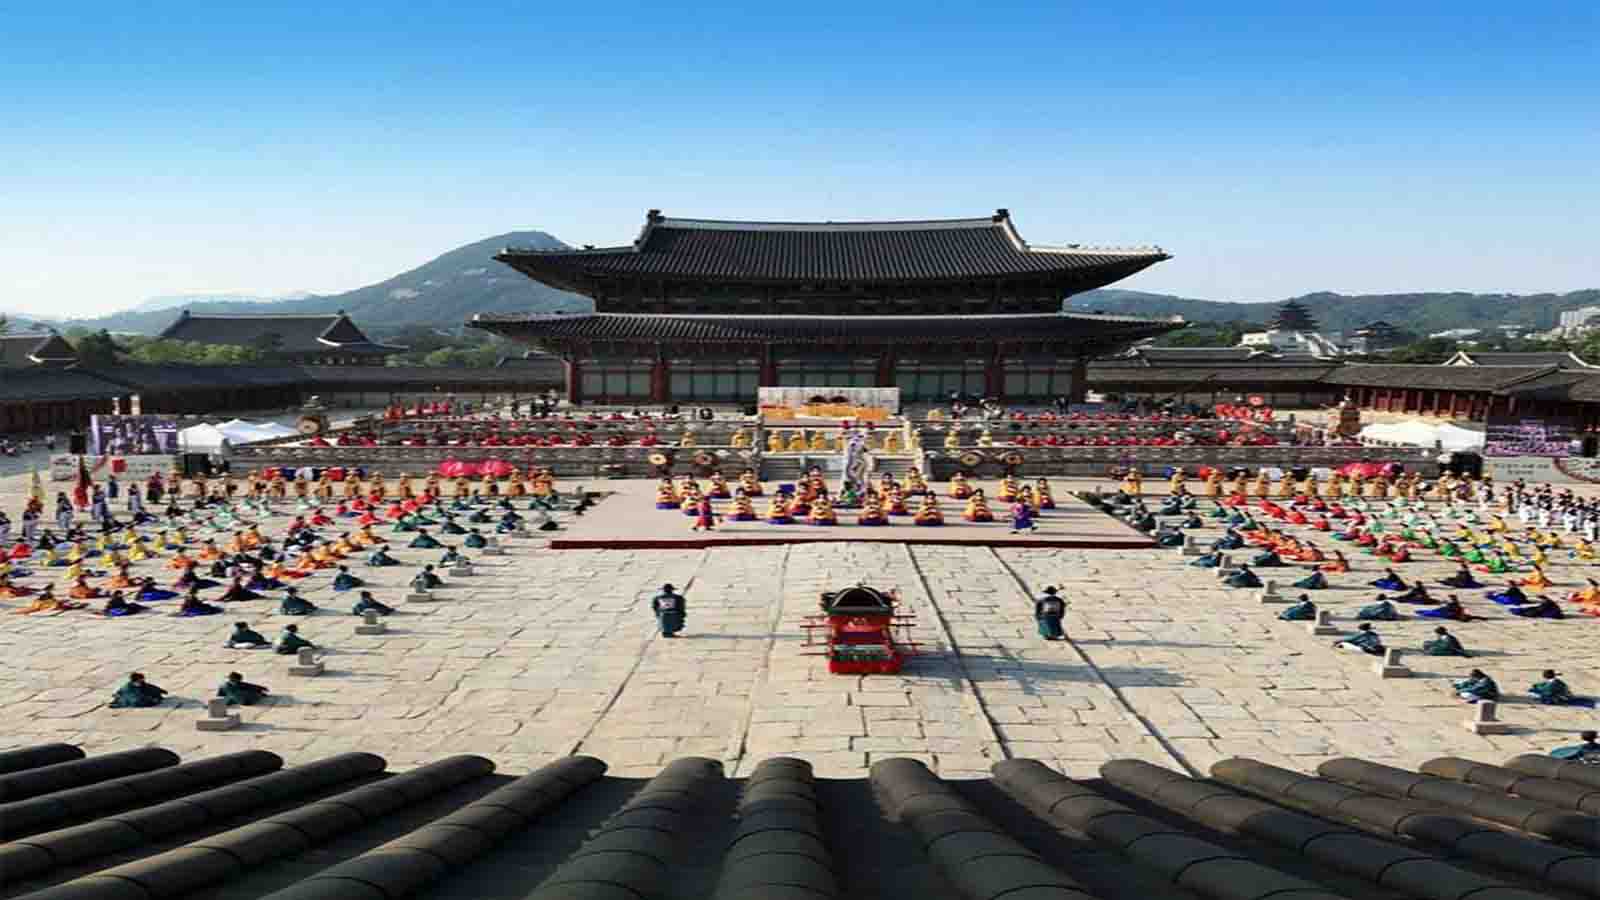 Tempat Wisata Cantik Paling Populer Di Korea Yang Patut